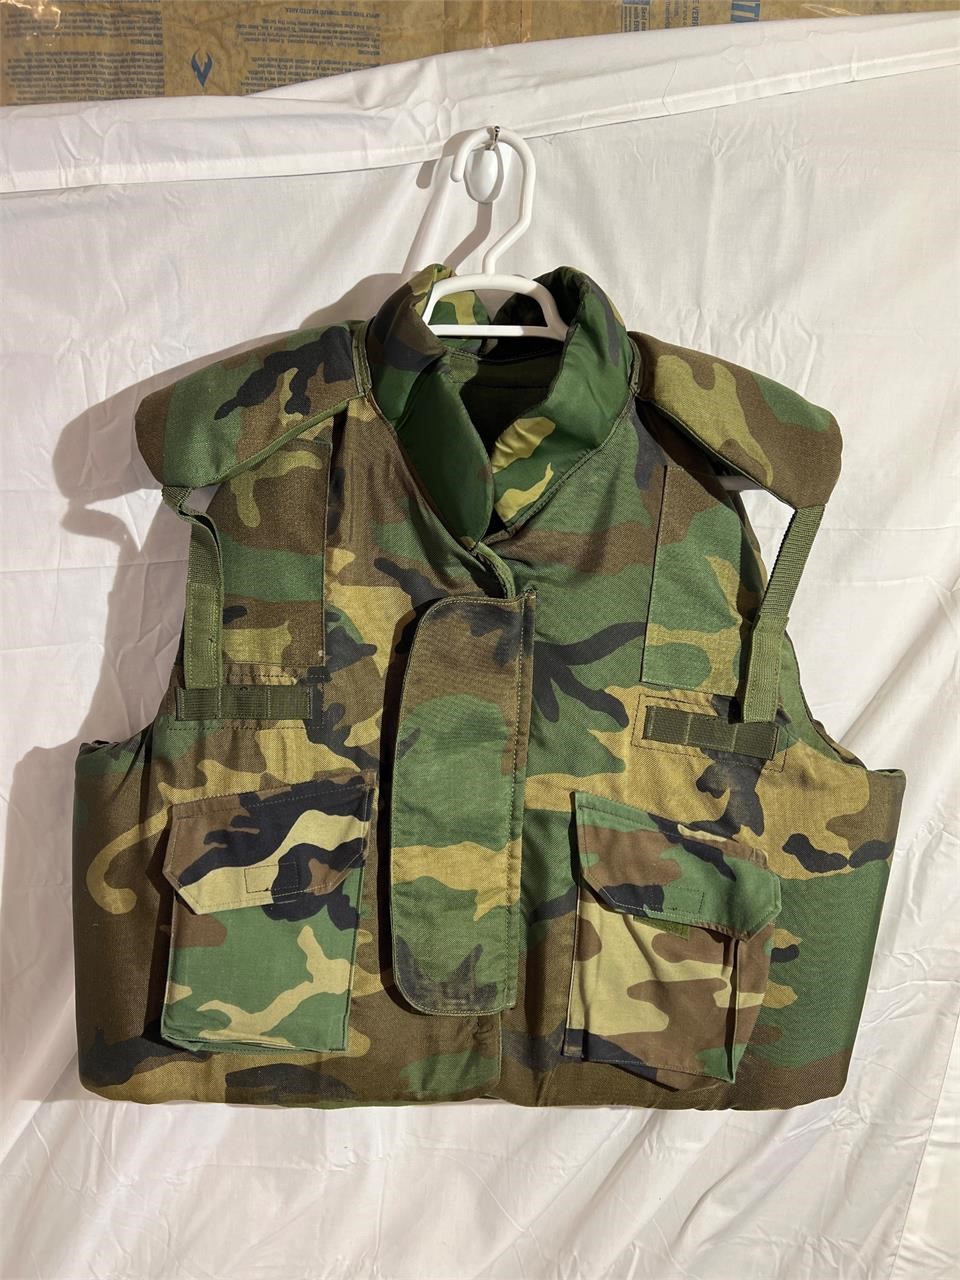 Kevlar body armor/flack jacket size XL